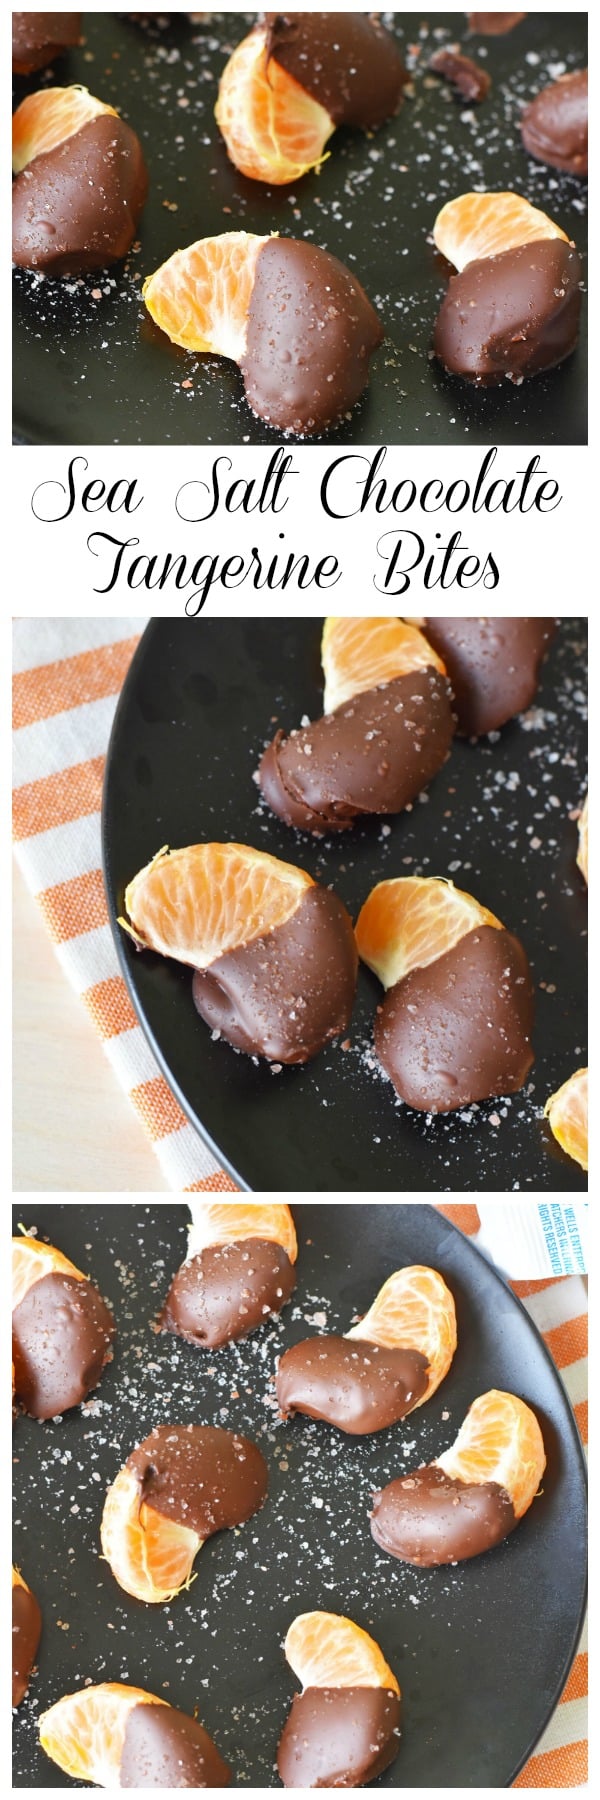 sea-salt-chocolate-tangerine-bites